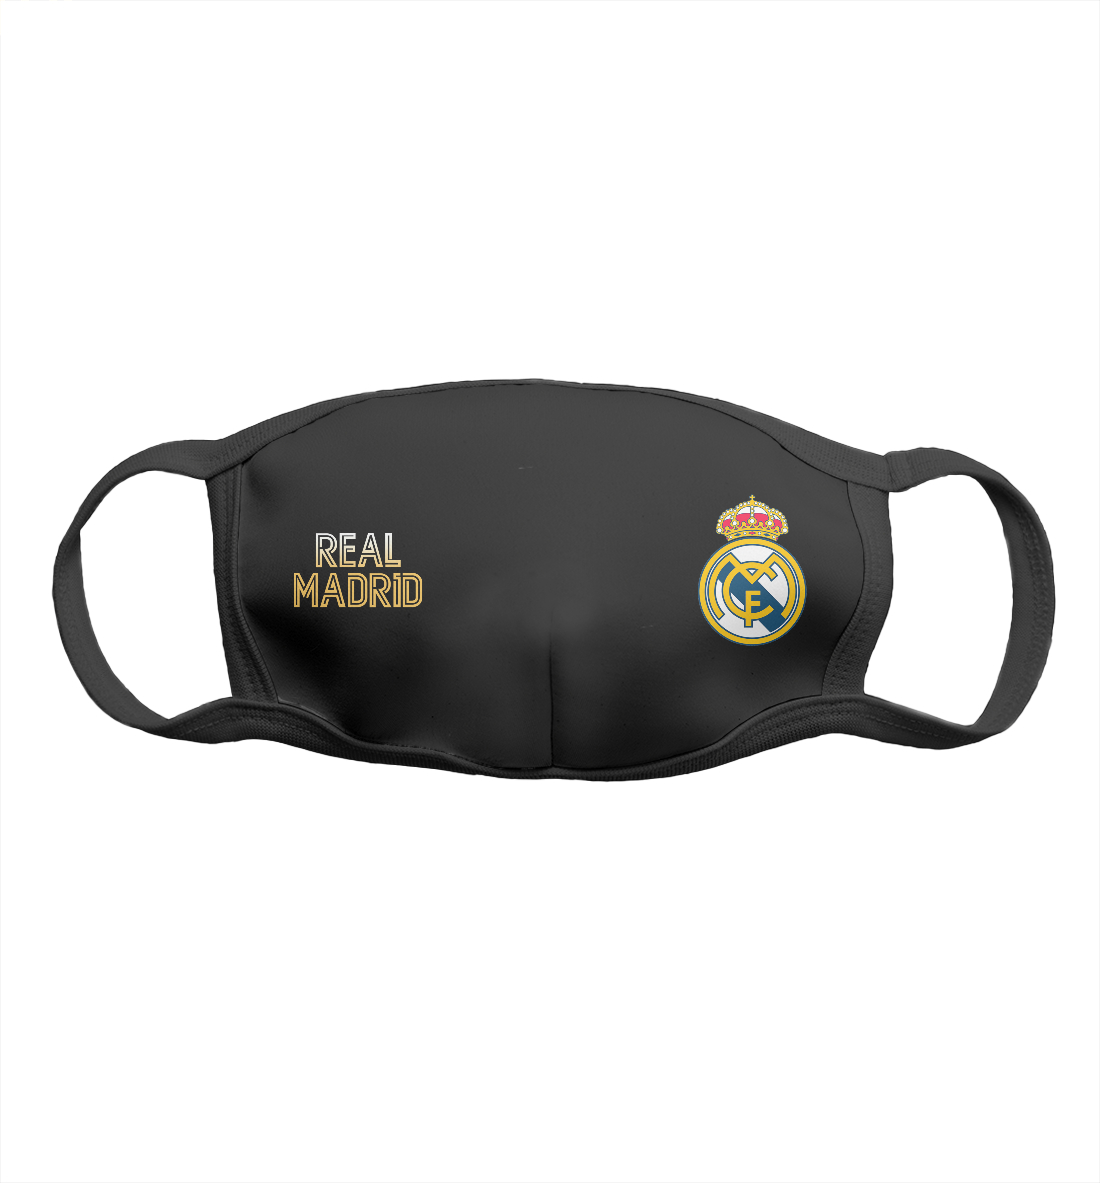 Детская Маска Real Madrid Gold для мальчиков, артикул REA-581283-msk-2mp